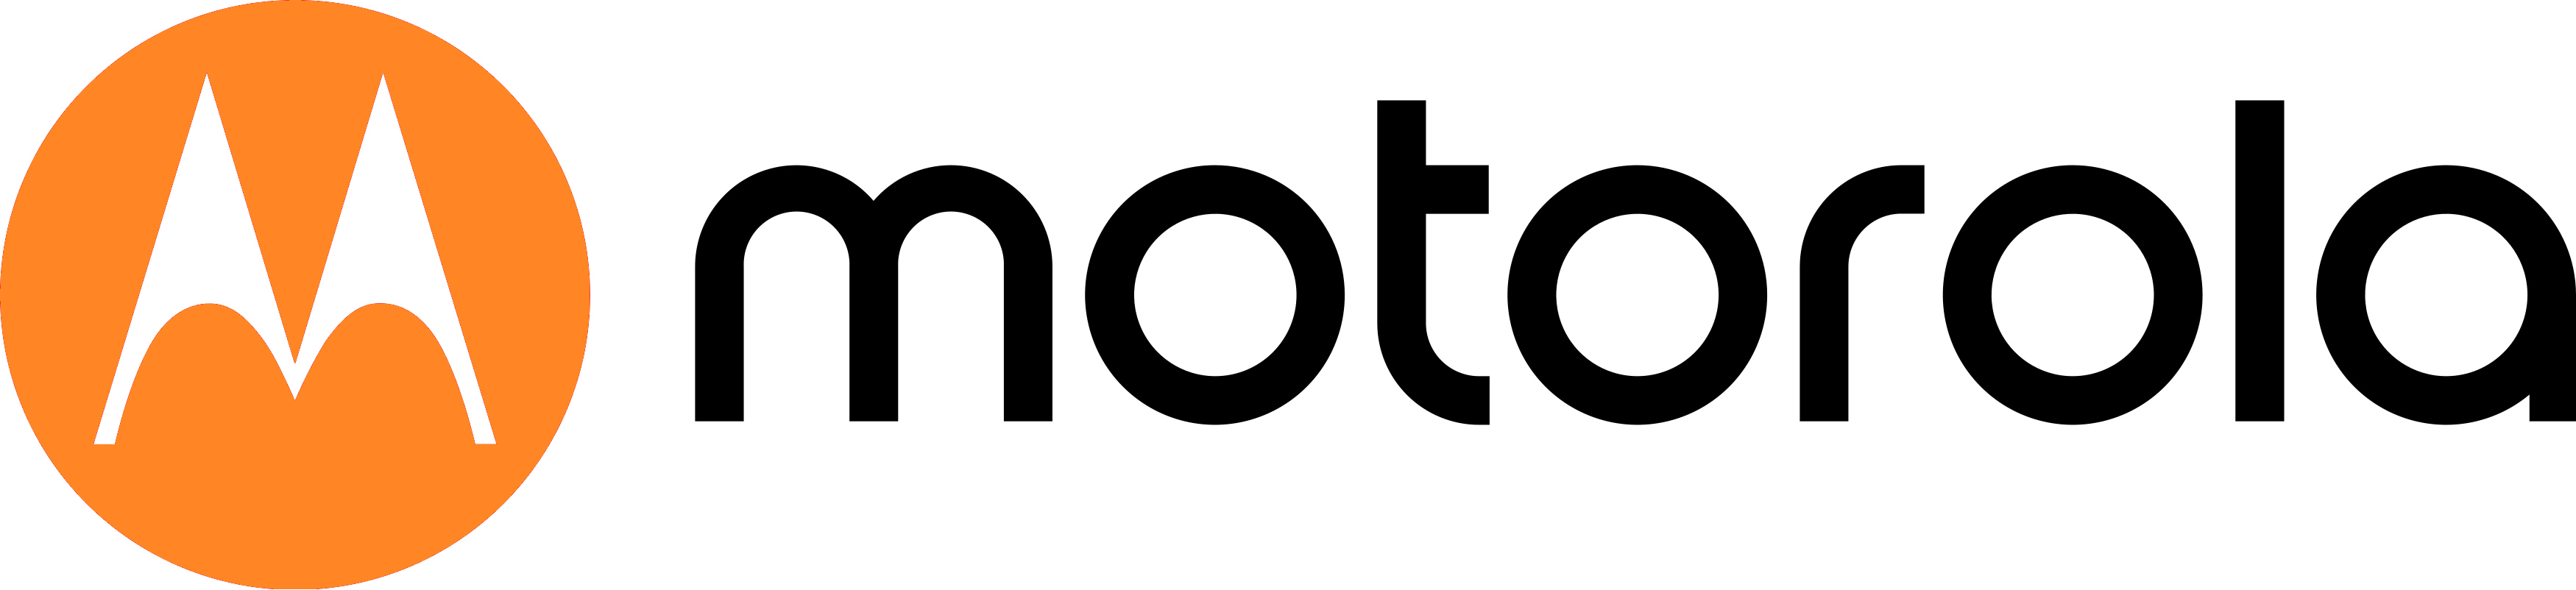 La “eMsignia” de Motorola es un emblema que perduró a través de los años, el cual la gente relaciona estrechamente con la marca.